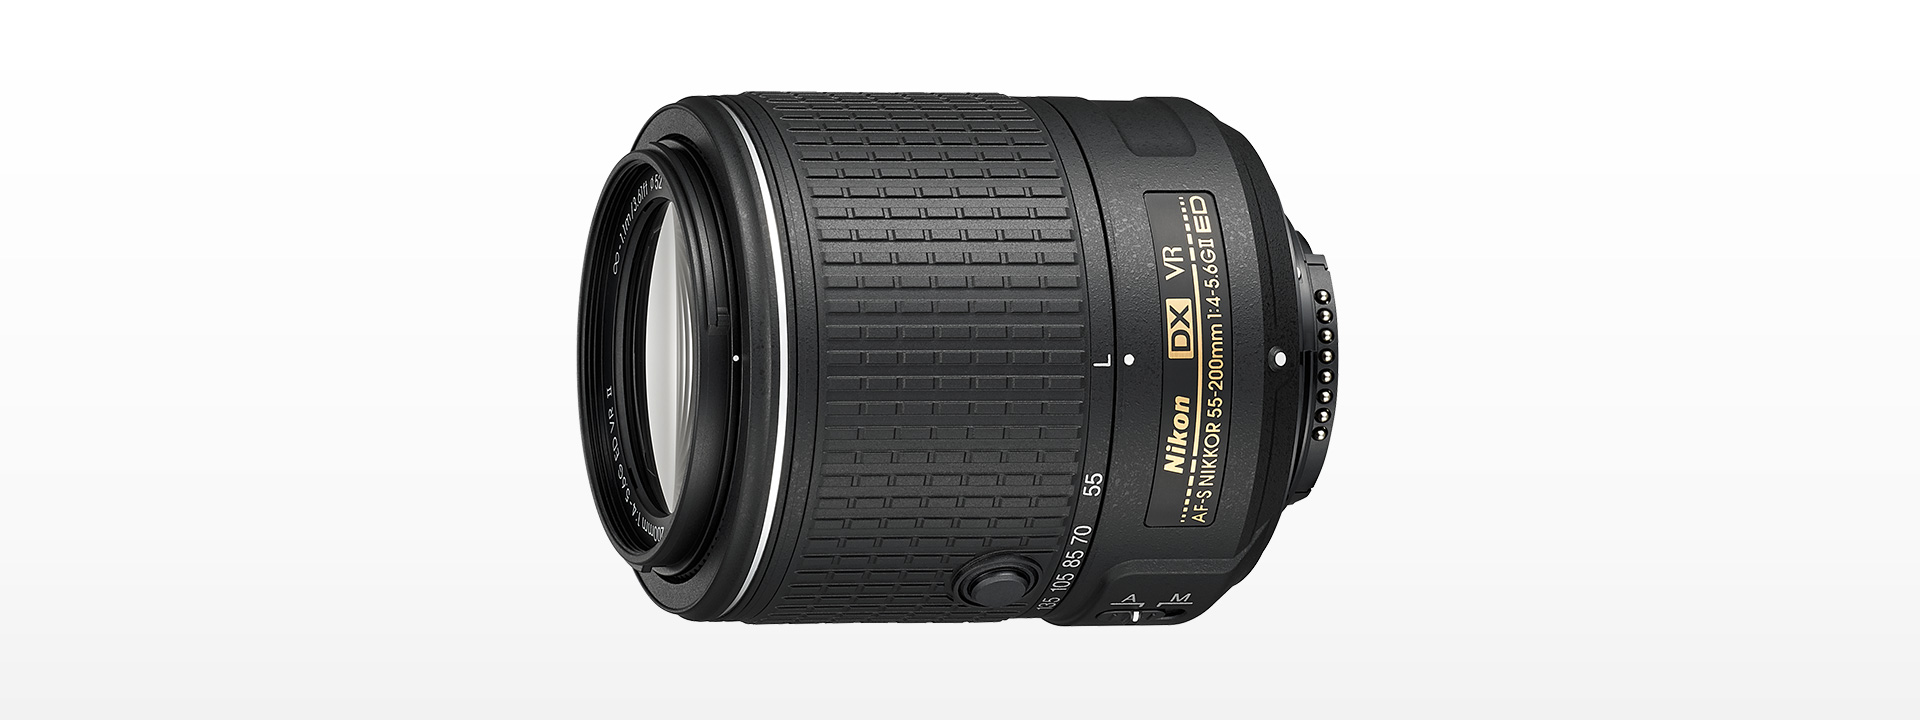 Nikon Nikkor Lens - 55-200mm f/4-5.6G